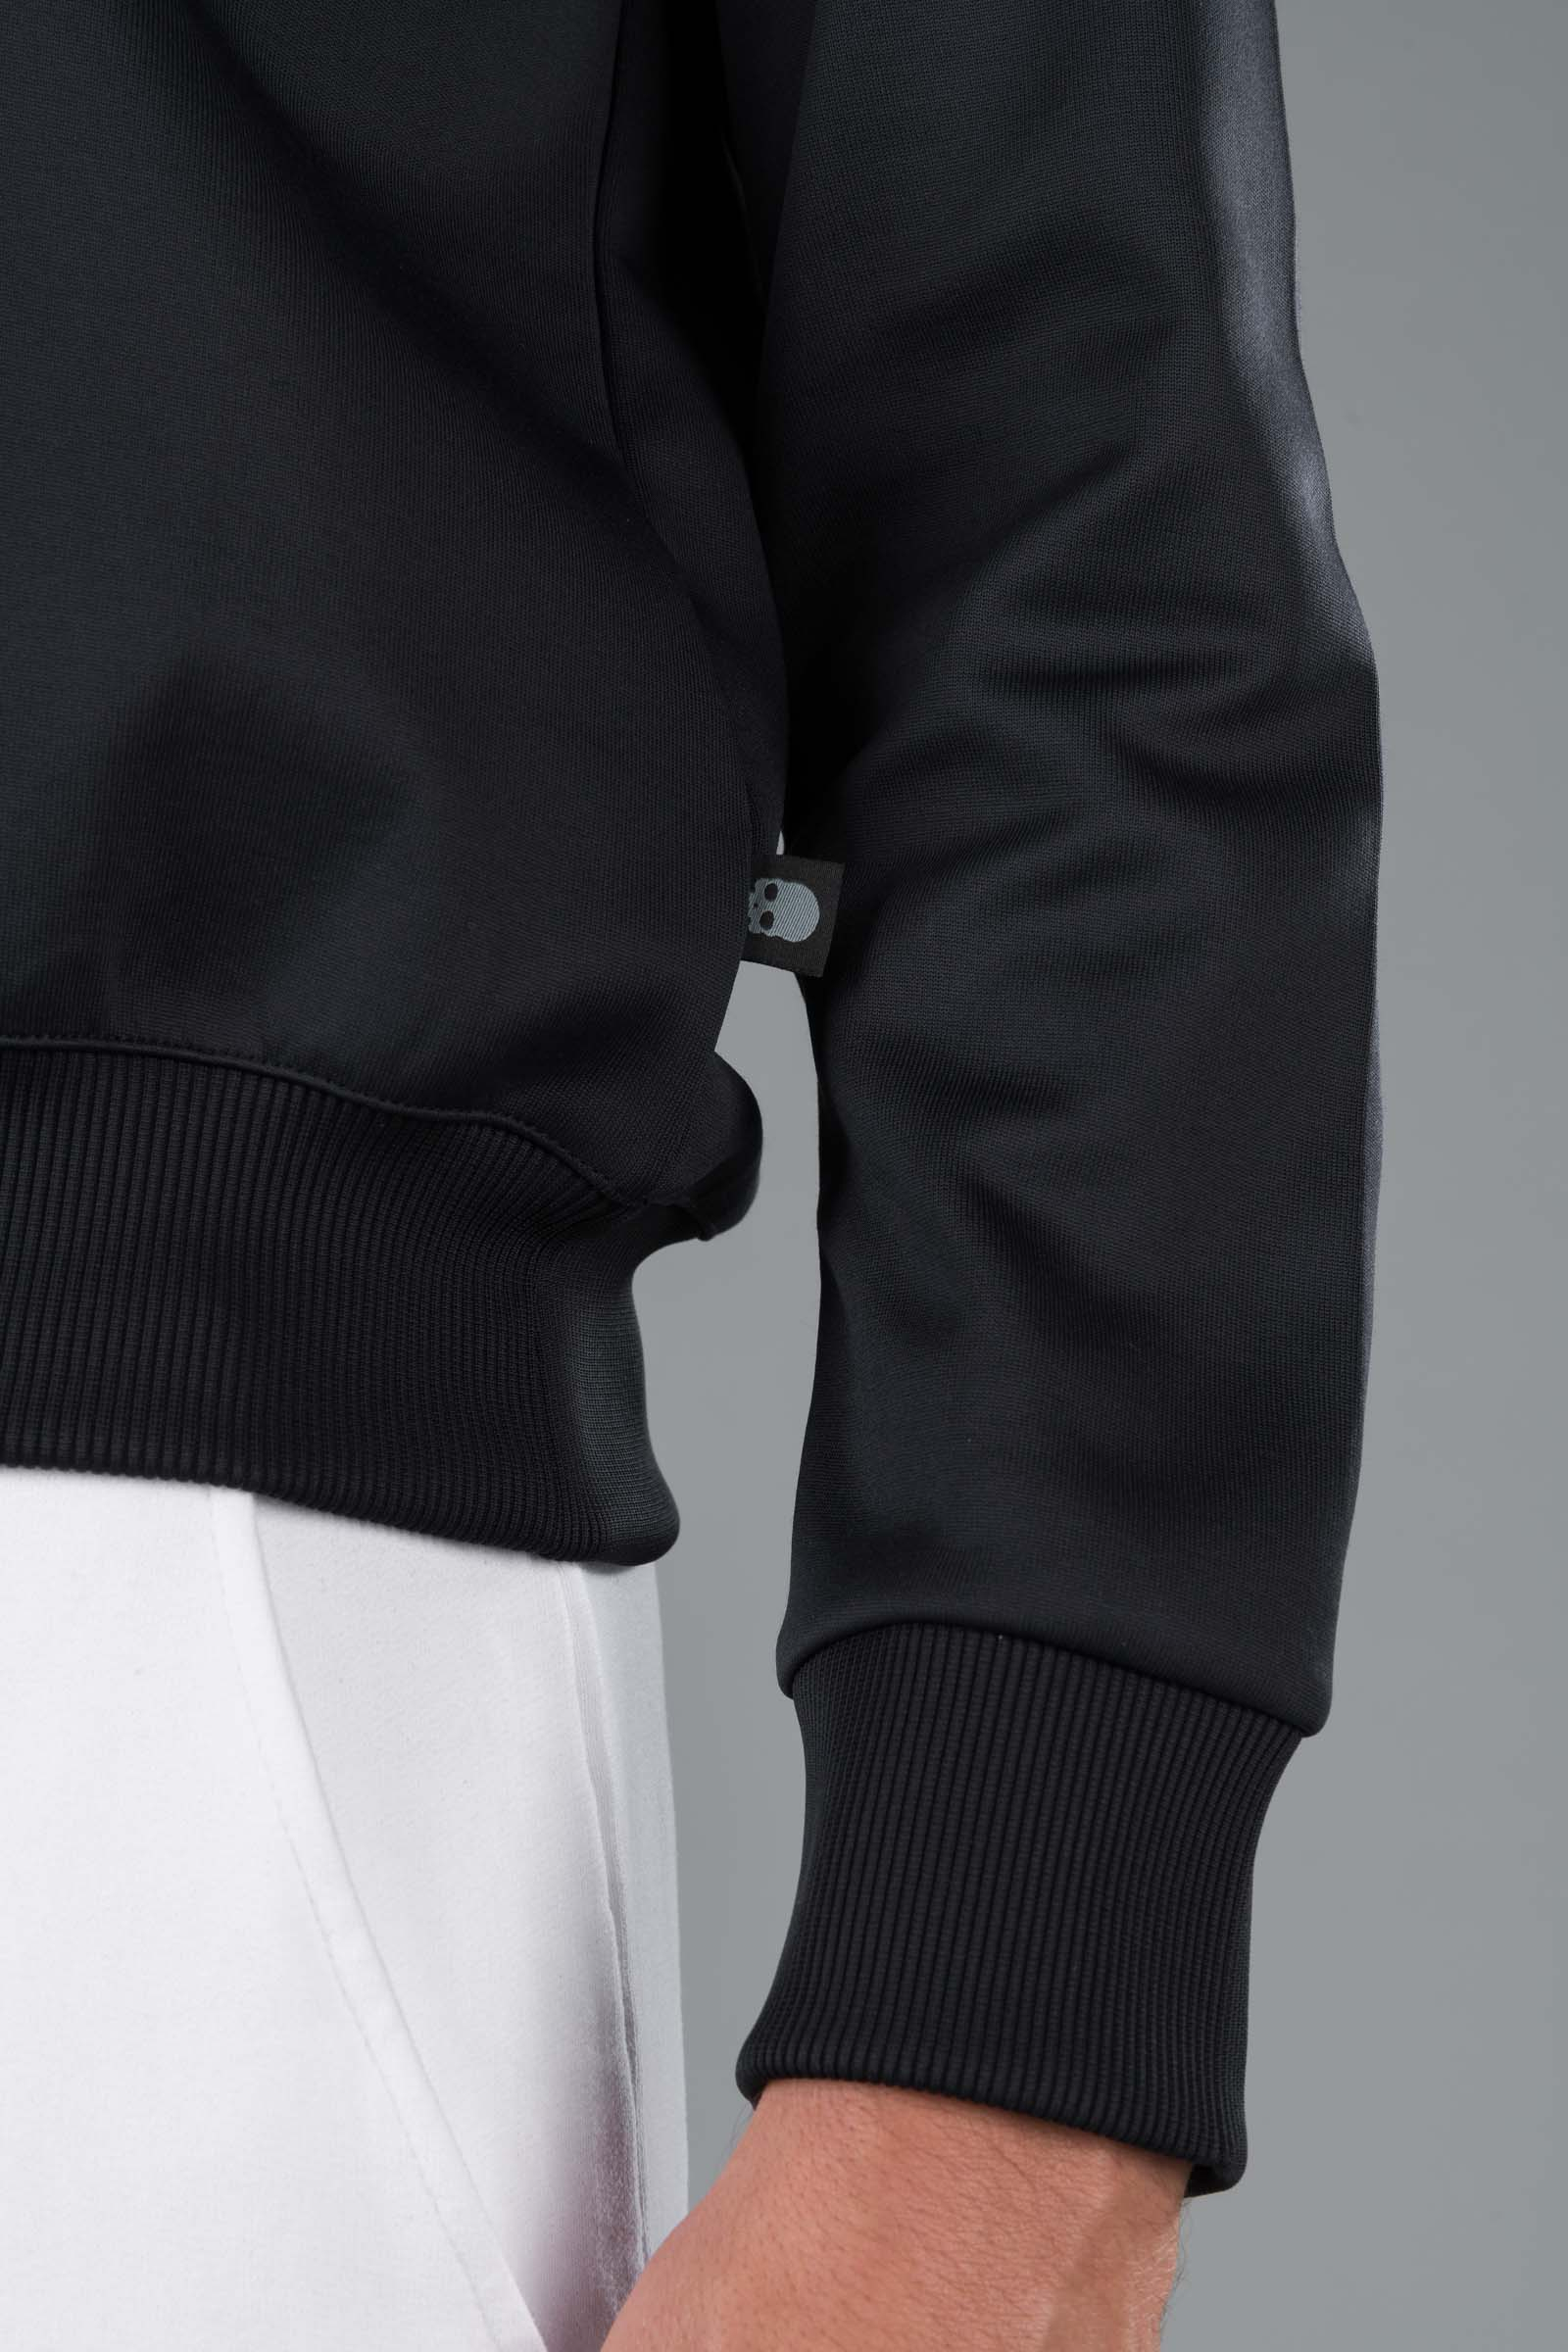 FELPA GIROCOLLO - BLACK - Abbigliamento sportivo | Hydrogen